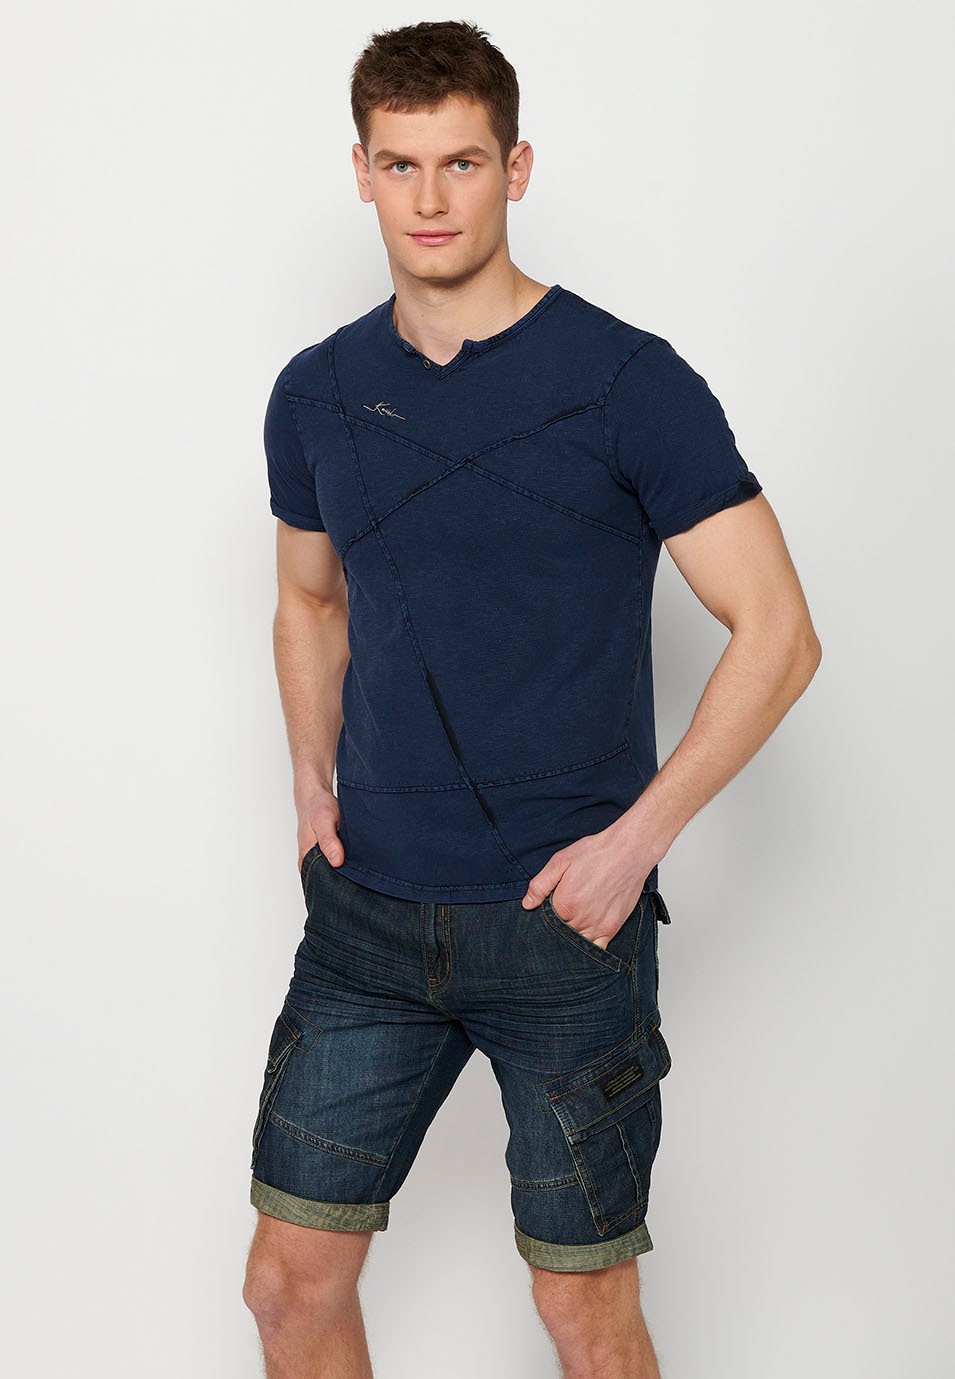 T-shirt manches courtes, col rond avec ouverture, coloris bleu pour homme